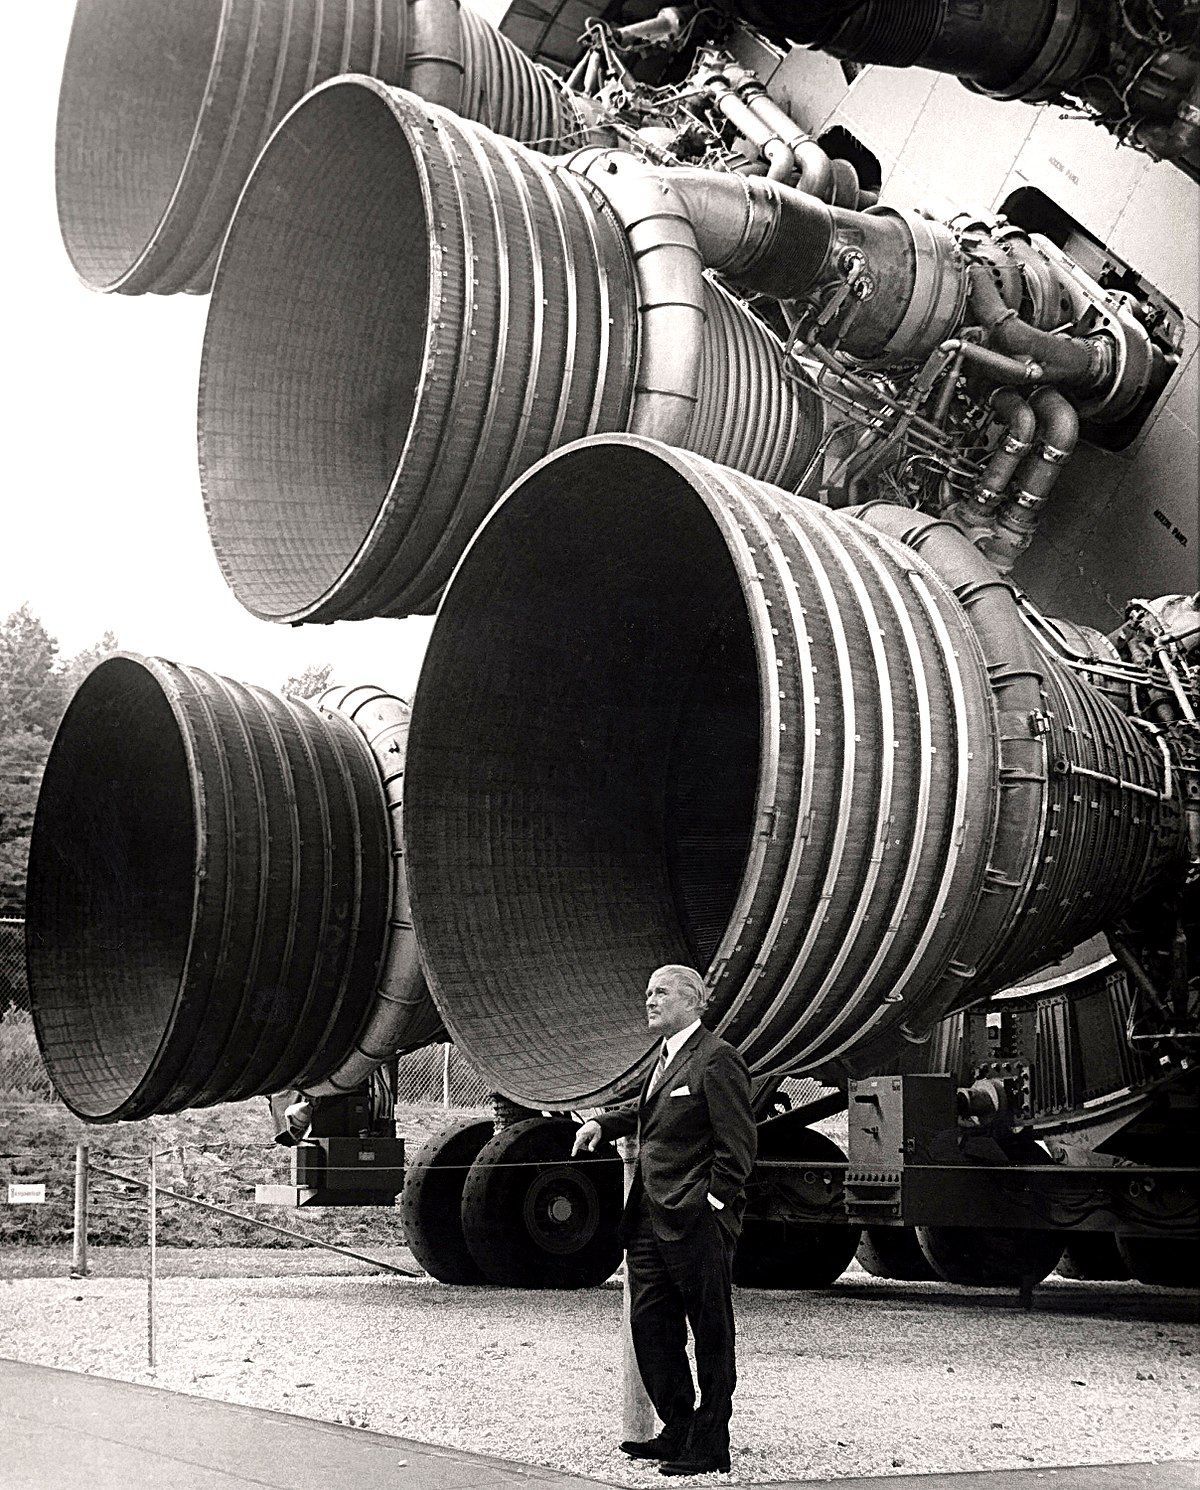 Möglich machte das Wernher von Braun. Der geniale Raketenwissenschaftler entwickelte die Mondrakete Saturn V, die bei 13 Flügen nie abstürzte. 